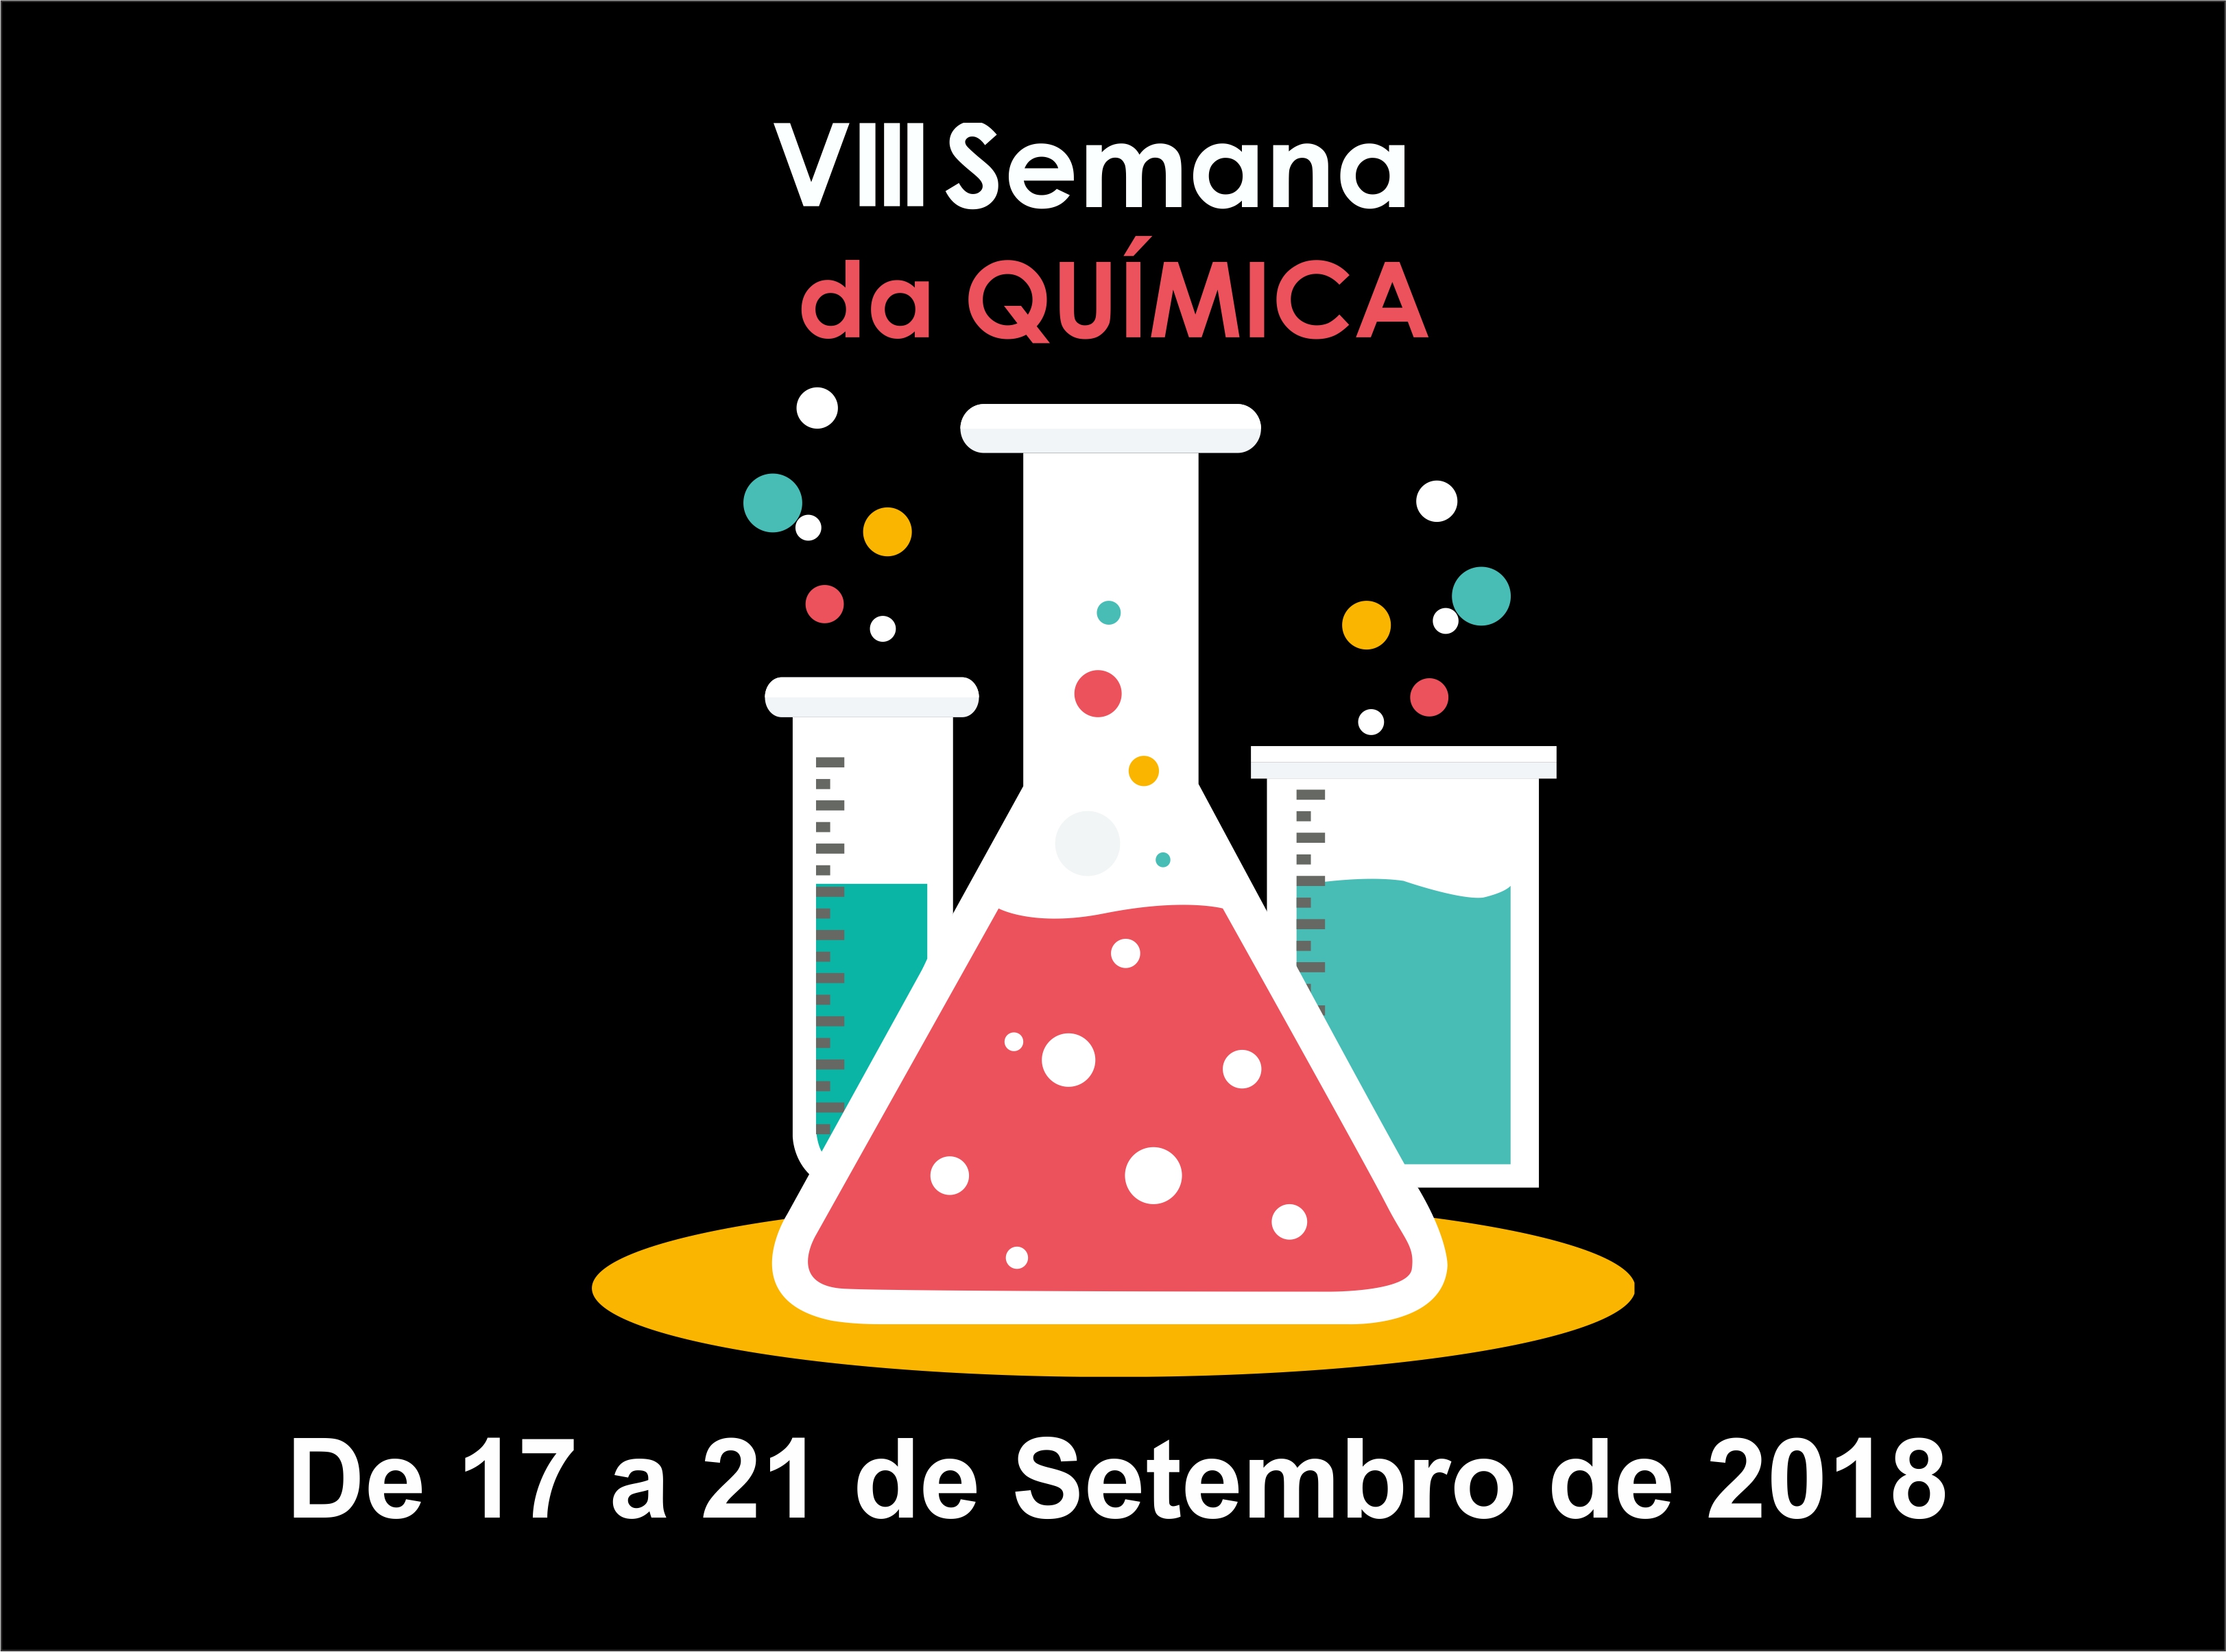 VIII Semana da Química - 17 a 21 de setembro de 2018